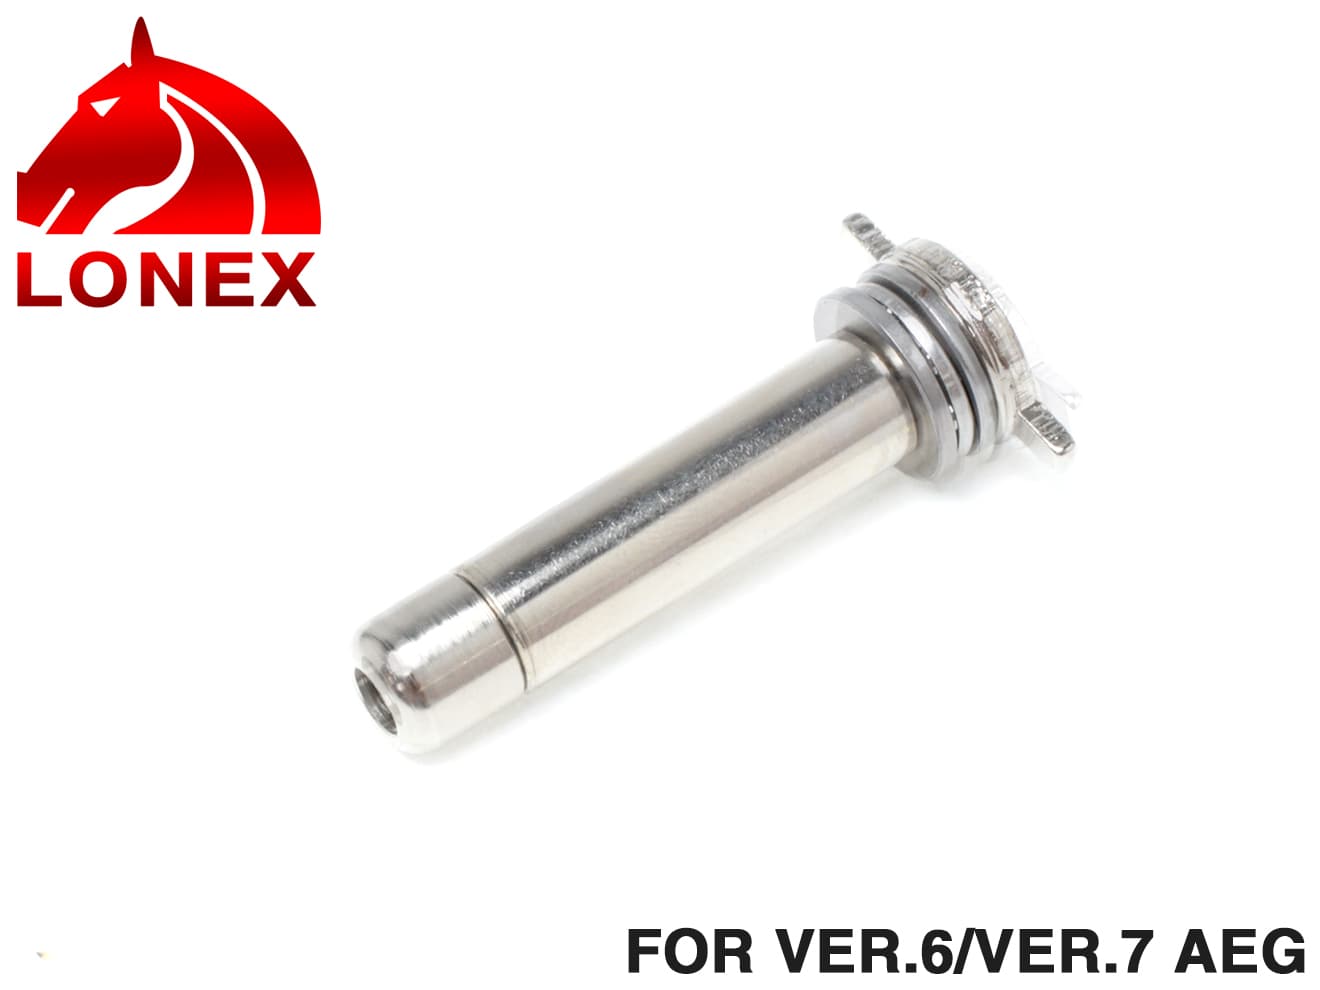 LONEX ベアリング 強化スプリングガイド Ver6 7◆ベアリングガイド 電動ガン バージョン6/7 メカBOX用 燃費軽減 サイクル向上 耐久性アップ